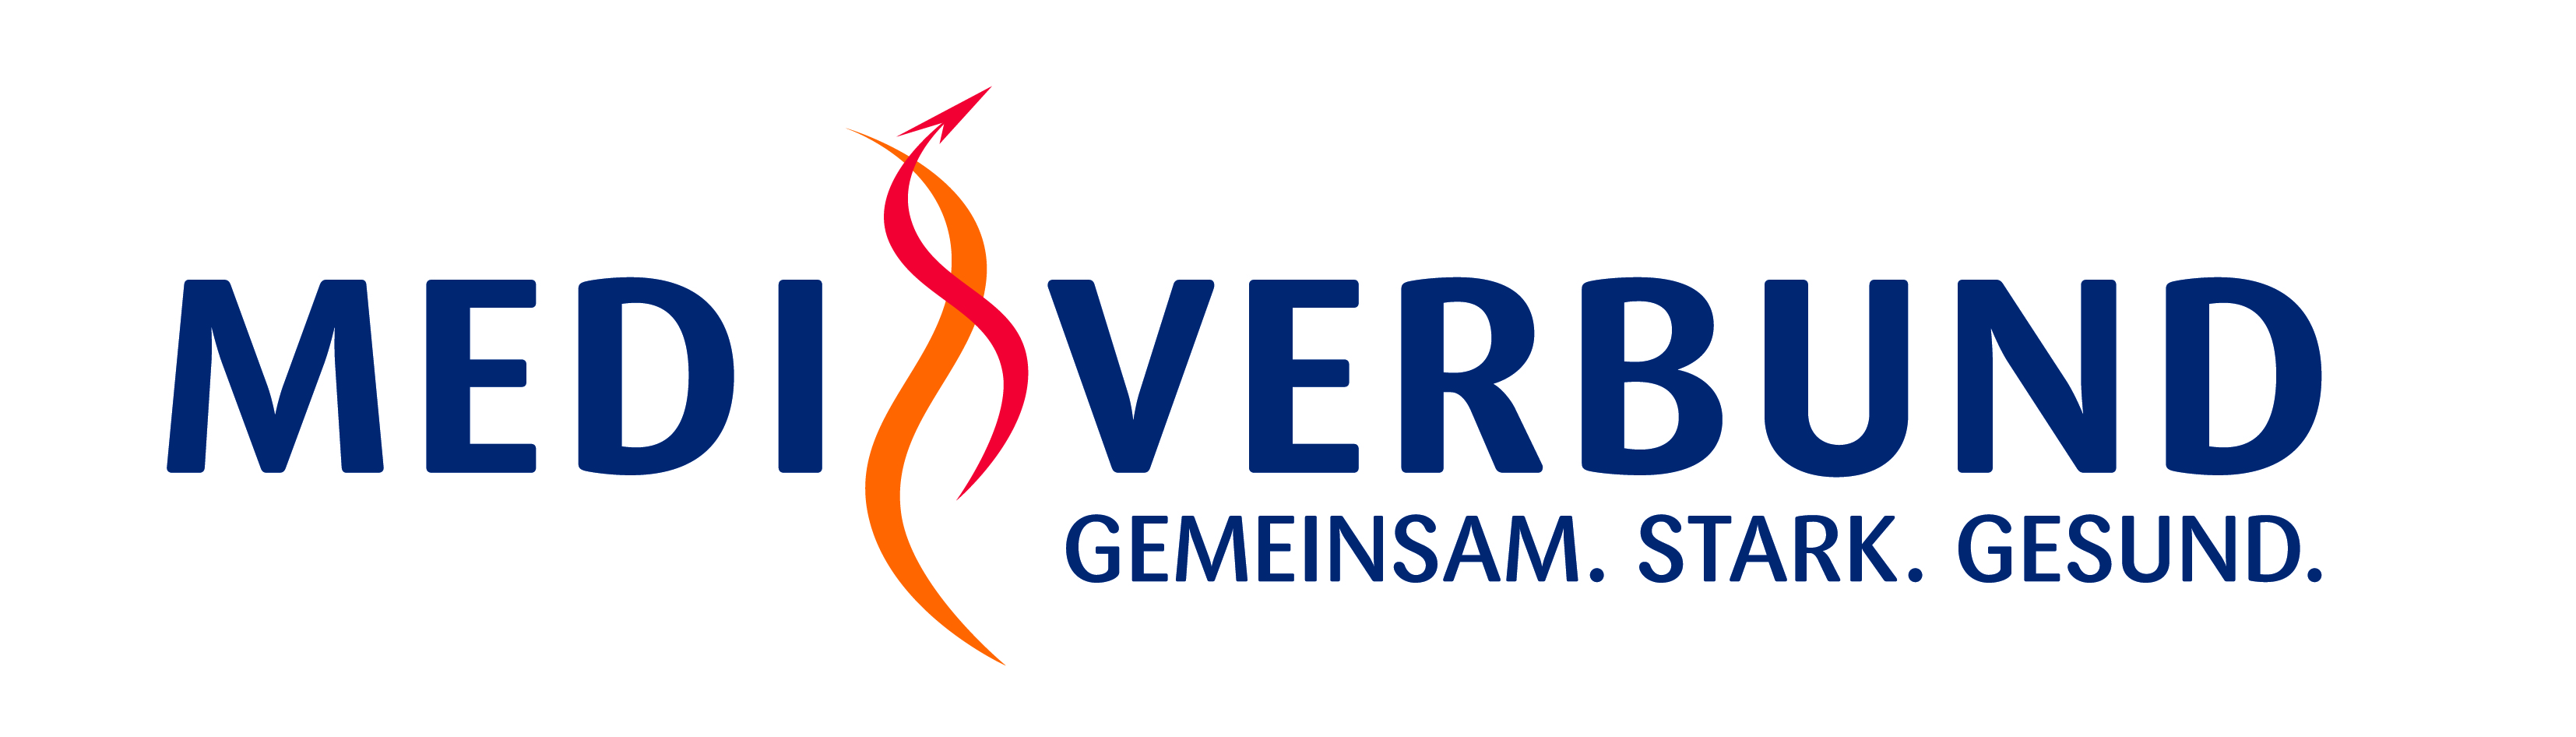 01 logo GSG